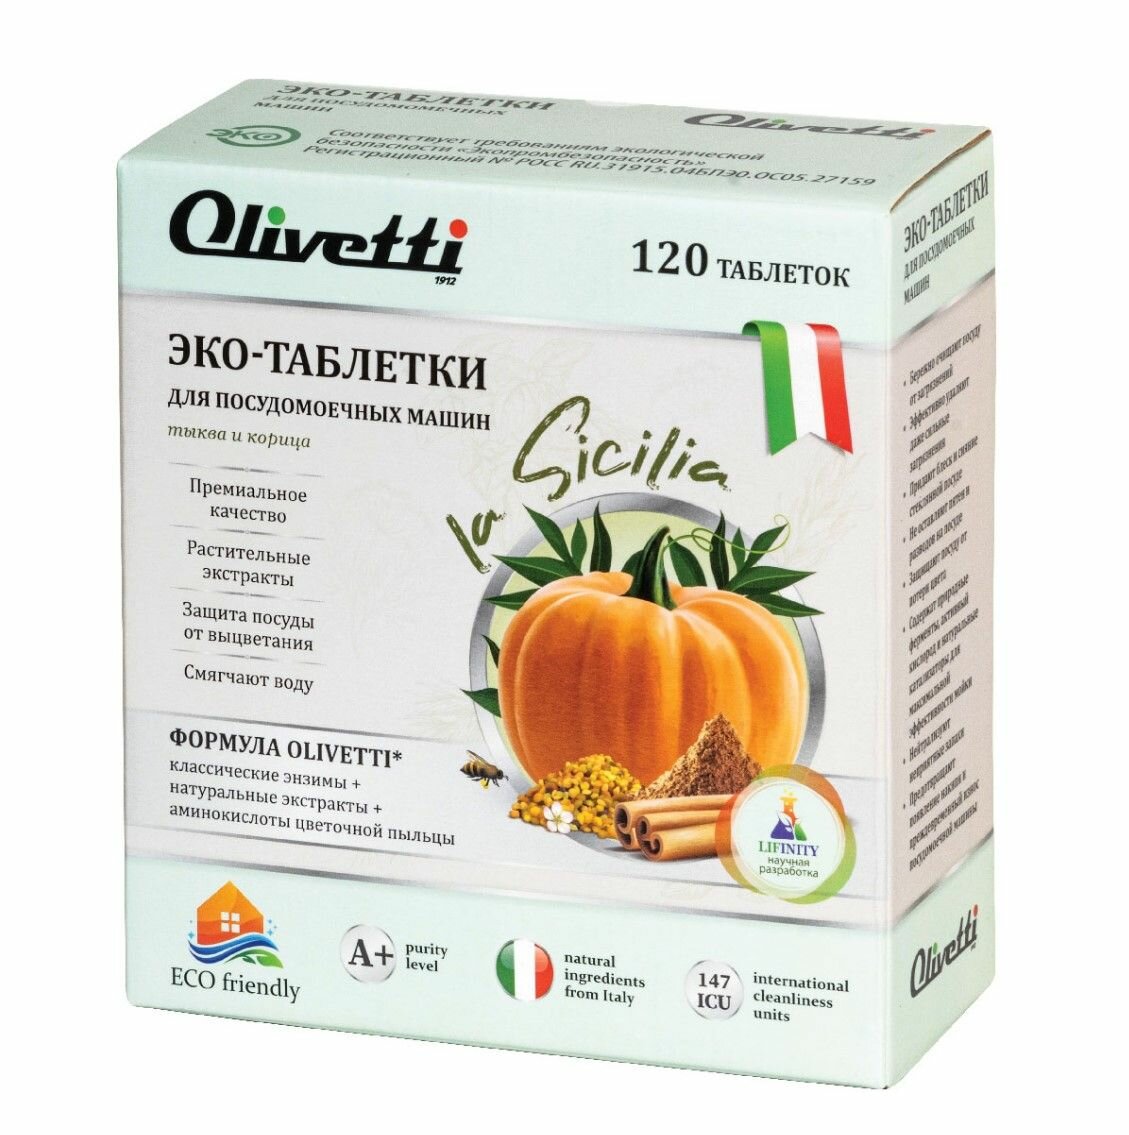 Olivetti Эко-таблетки для посудомоечных машин Тыква и корица 120  без пятен и разводов защита цвета натуральные компоненты из Италии